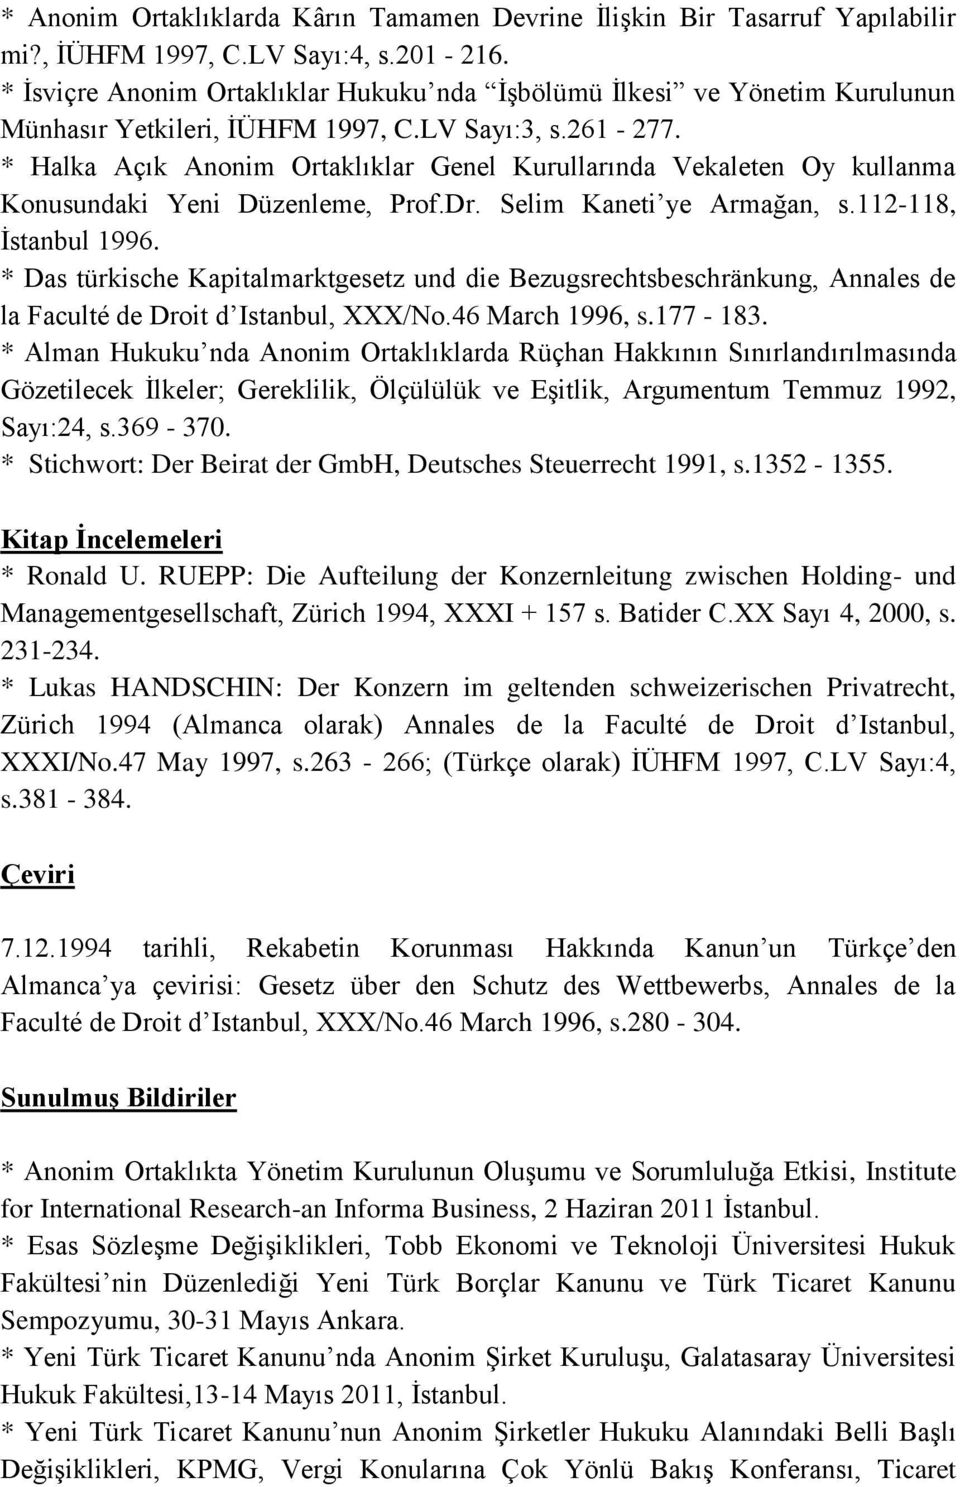 * Halka Açık Anonim Ortaklıklar Genel Kurullarında Vekaleten Oy kullanma Konusundaki Yeni Düzenleme, Prof.Dr. Selim Kaneti ye Armağan, s.112-118, İstanbul 1996.